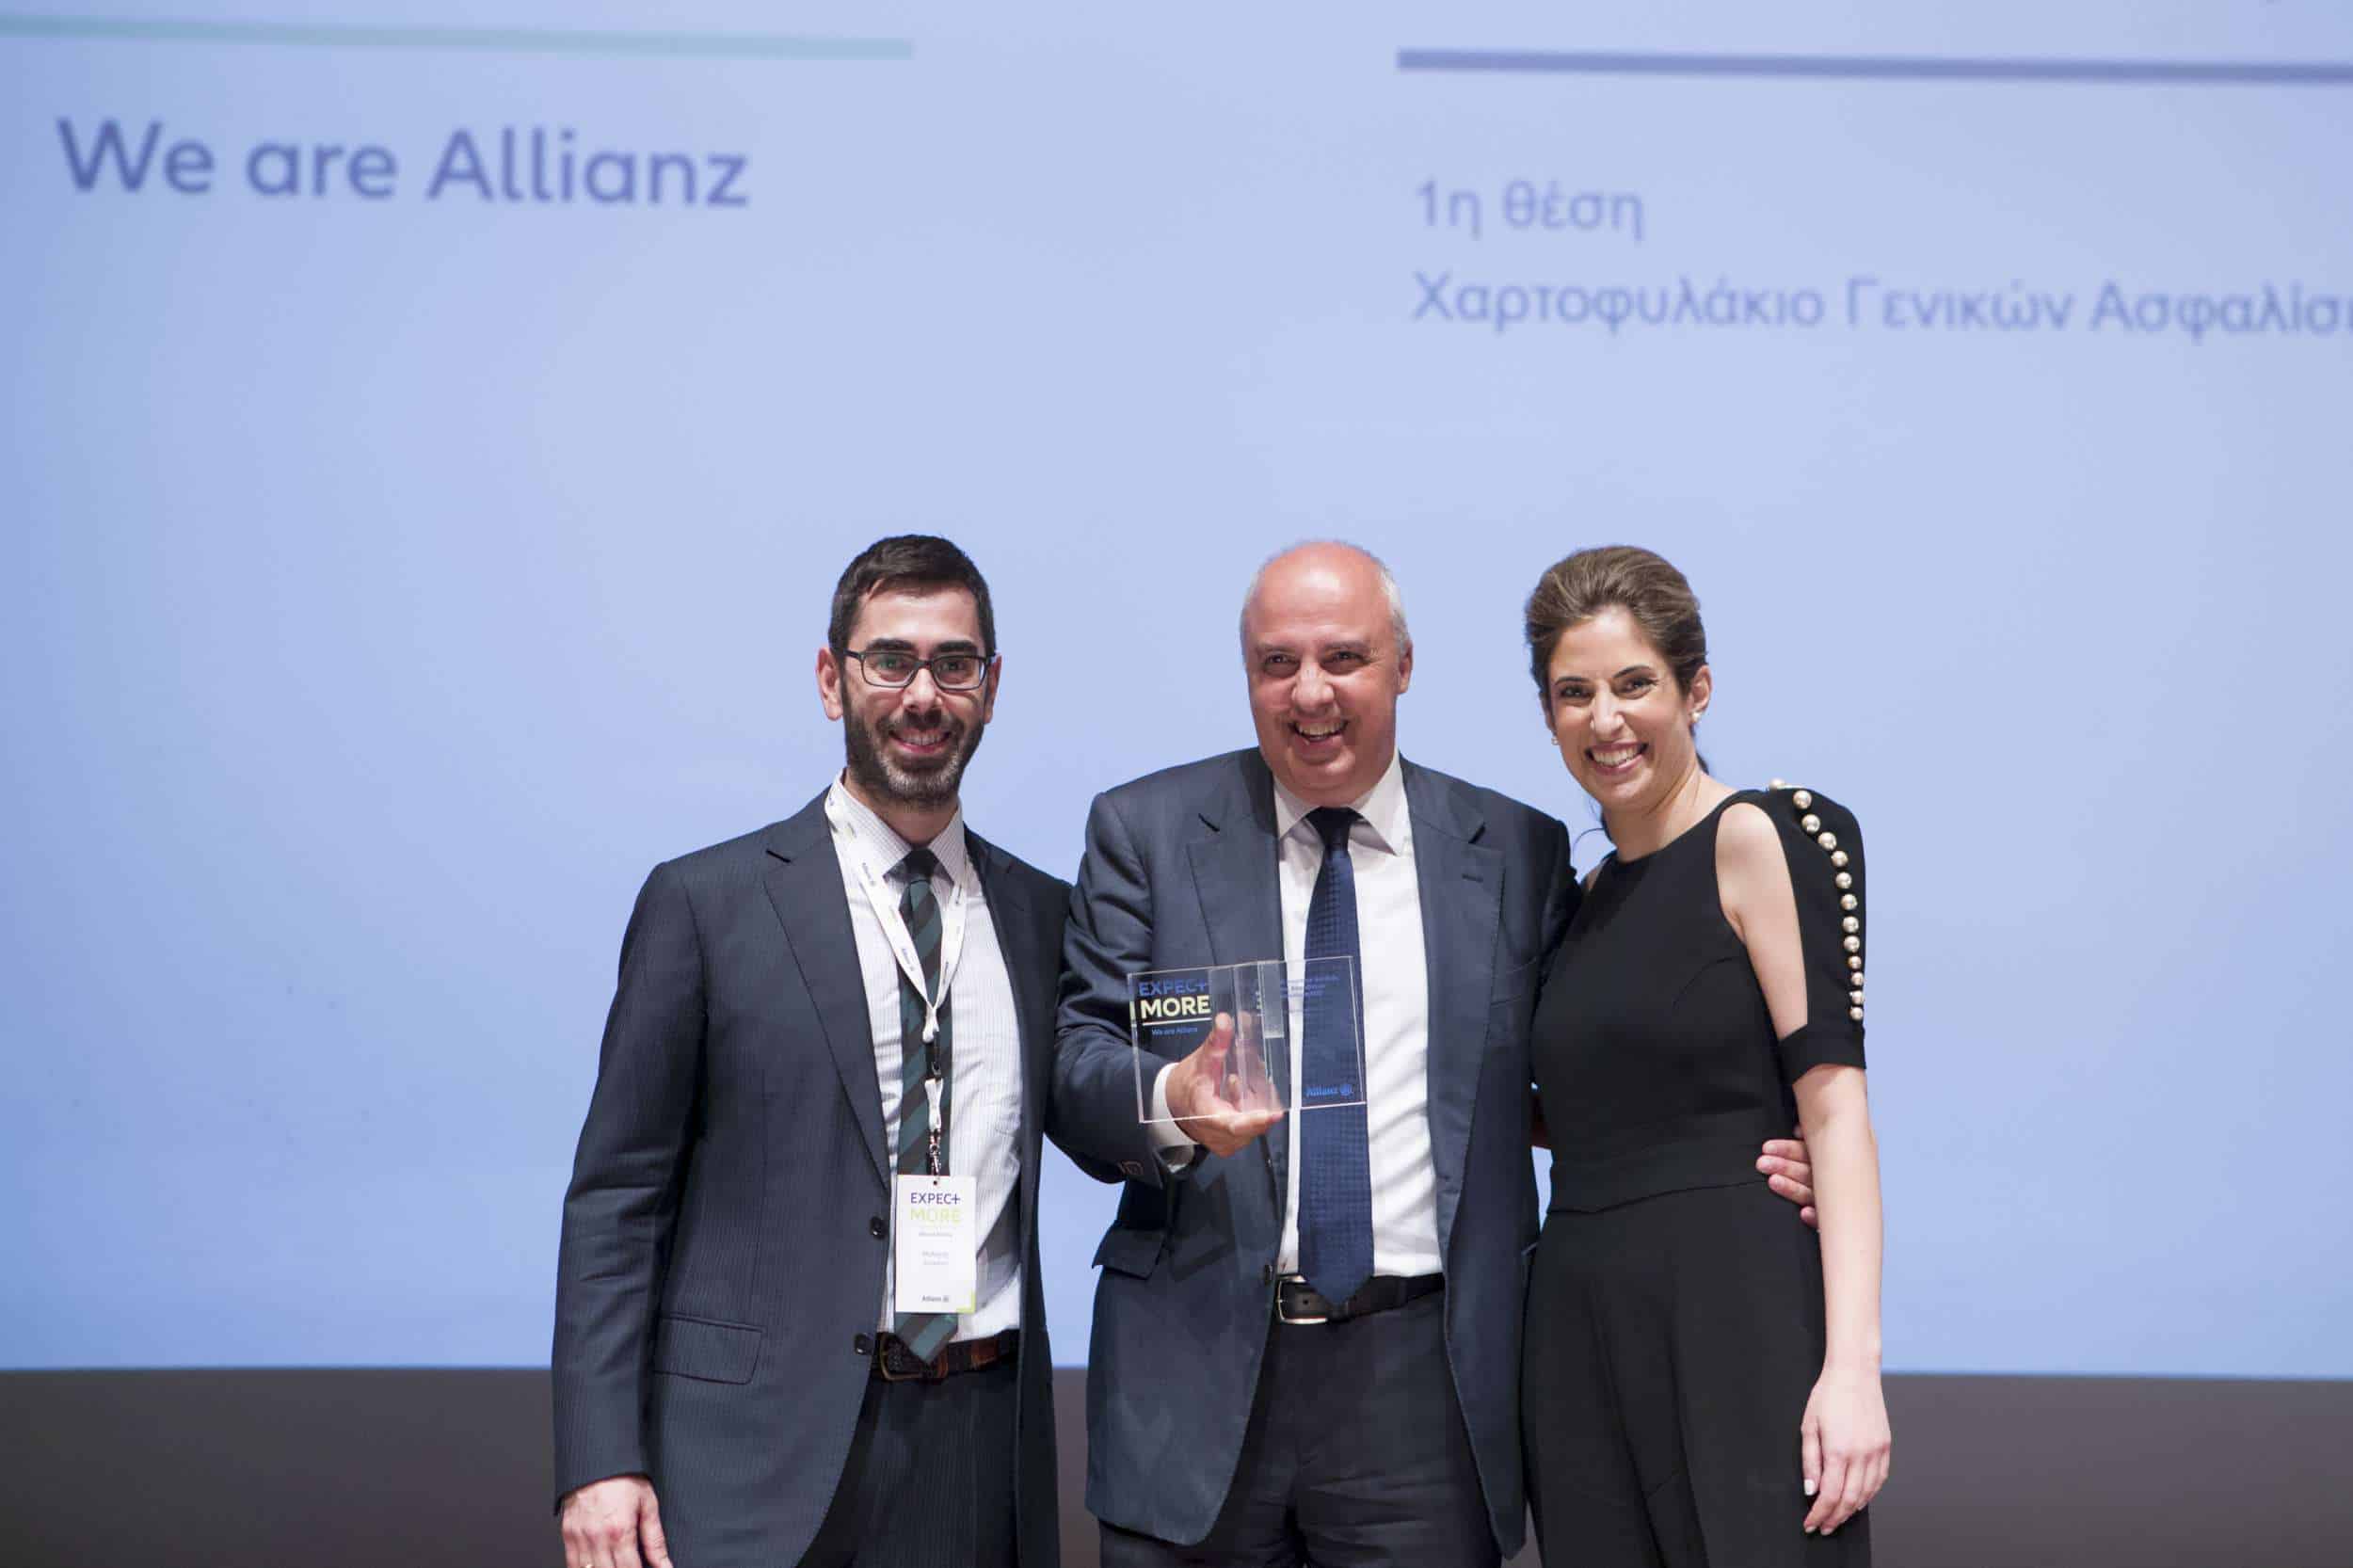 Οι συνεργάτες της Allianz Ελλάδος που διακρίθηκαν (φωτ. στιγμιότυπα)